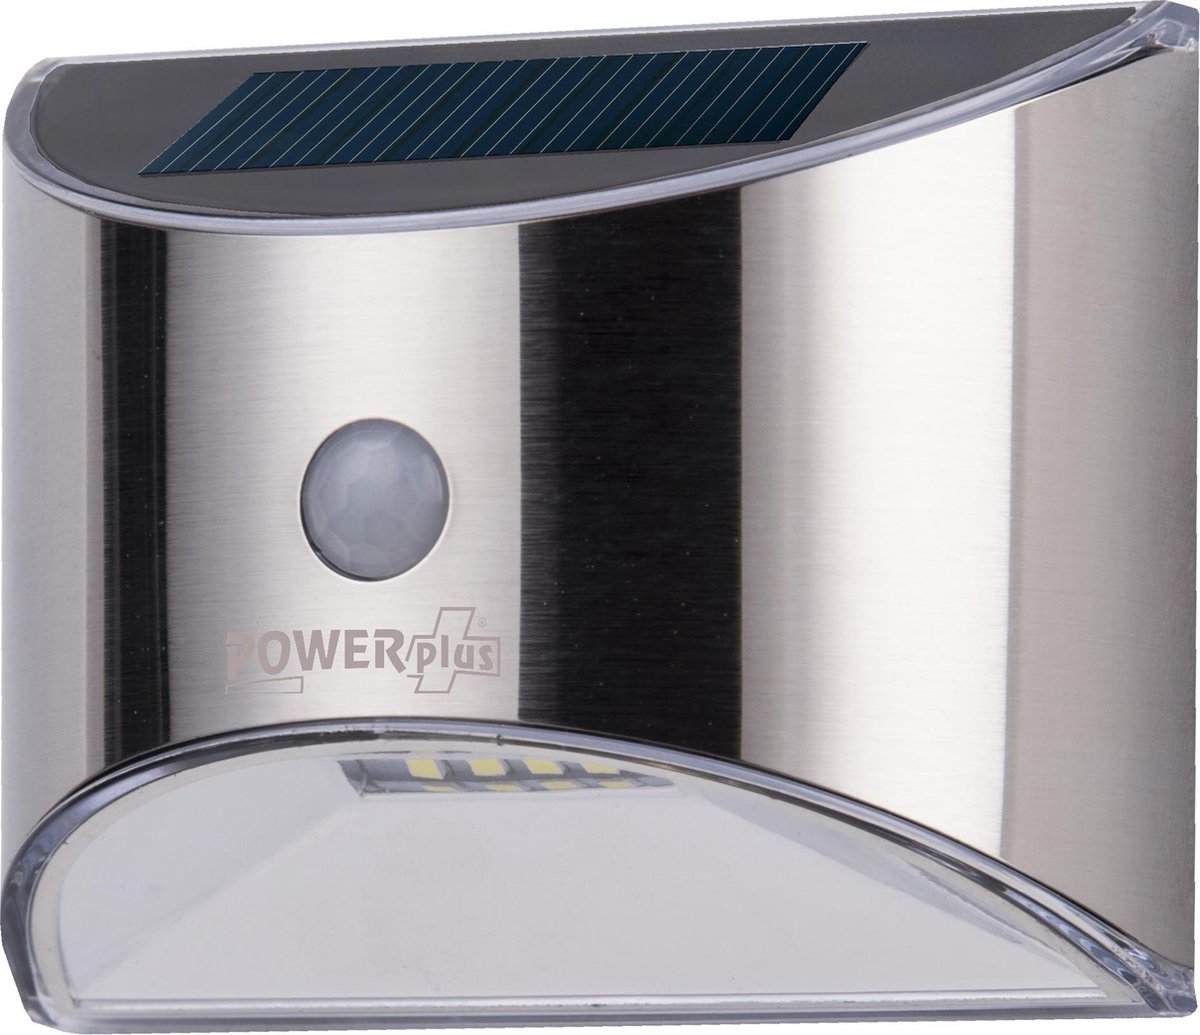 POWERplus Parakeet Solar PIR Sensor LED Buitenlamp - Zonne energie verlichting met infrarood PIR bewegingssensor